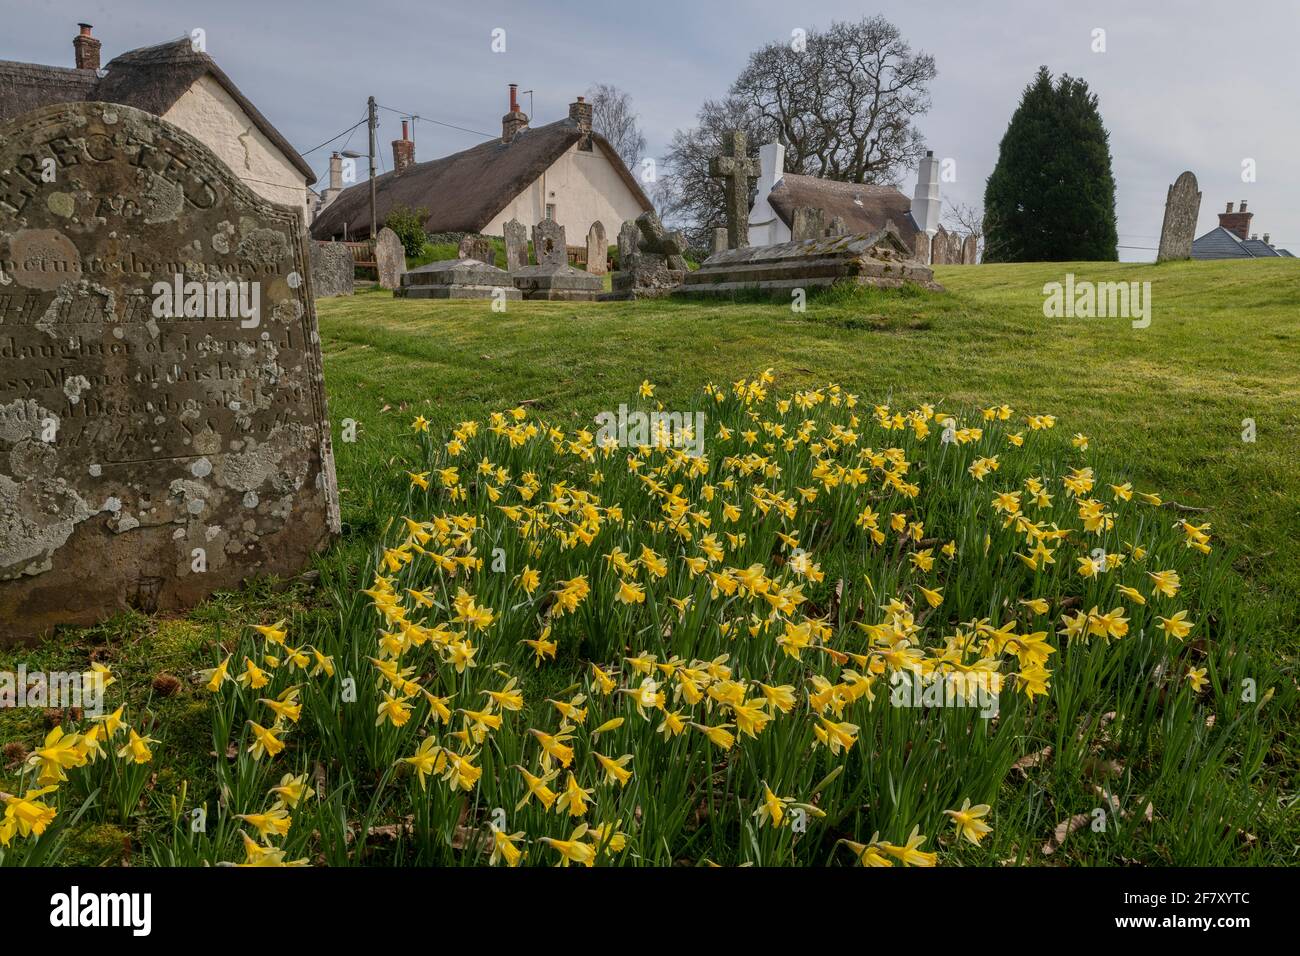 Jonarcisse sauvage, Narcissus pseudophonarcisse ssp. Pseudophonarcisse, floraison dans le cimetière de Drewsteignton, Devon. Banque D'Images